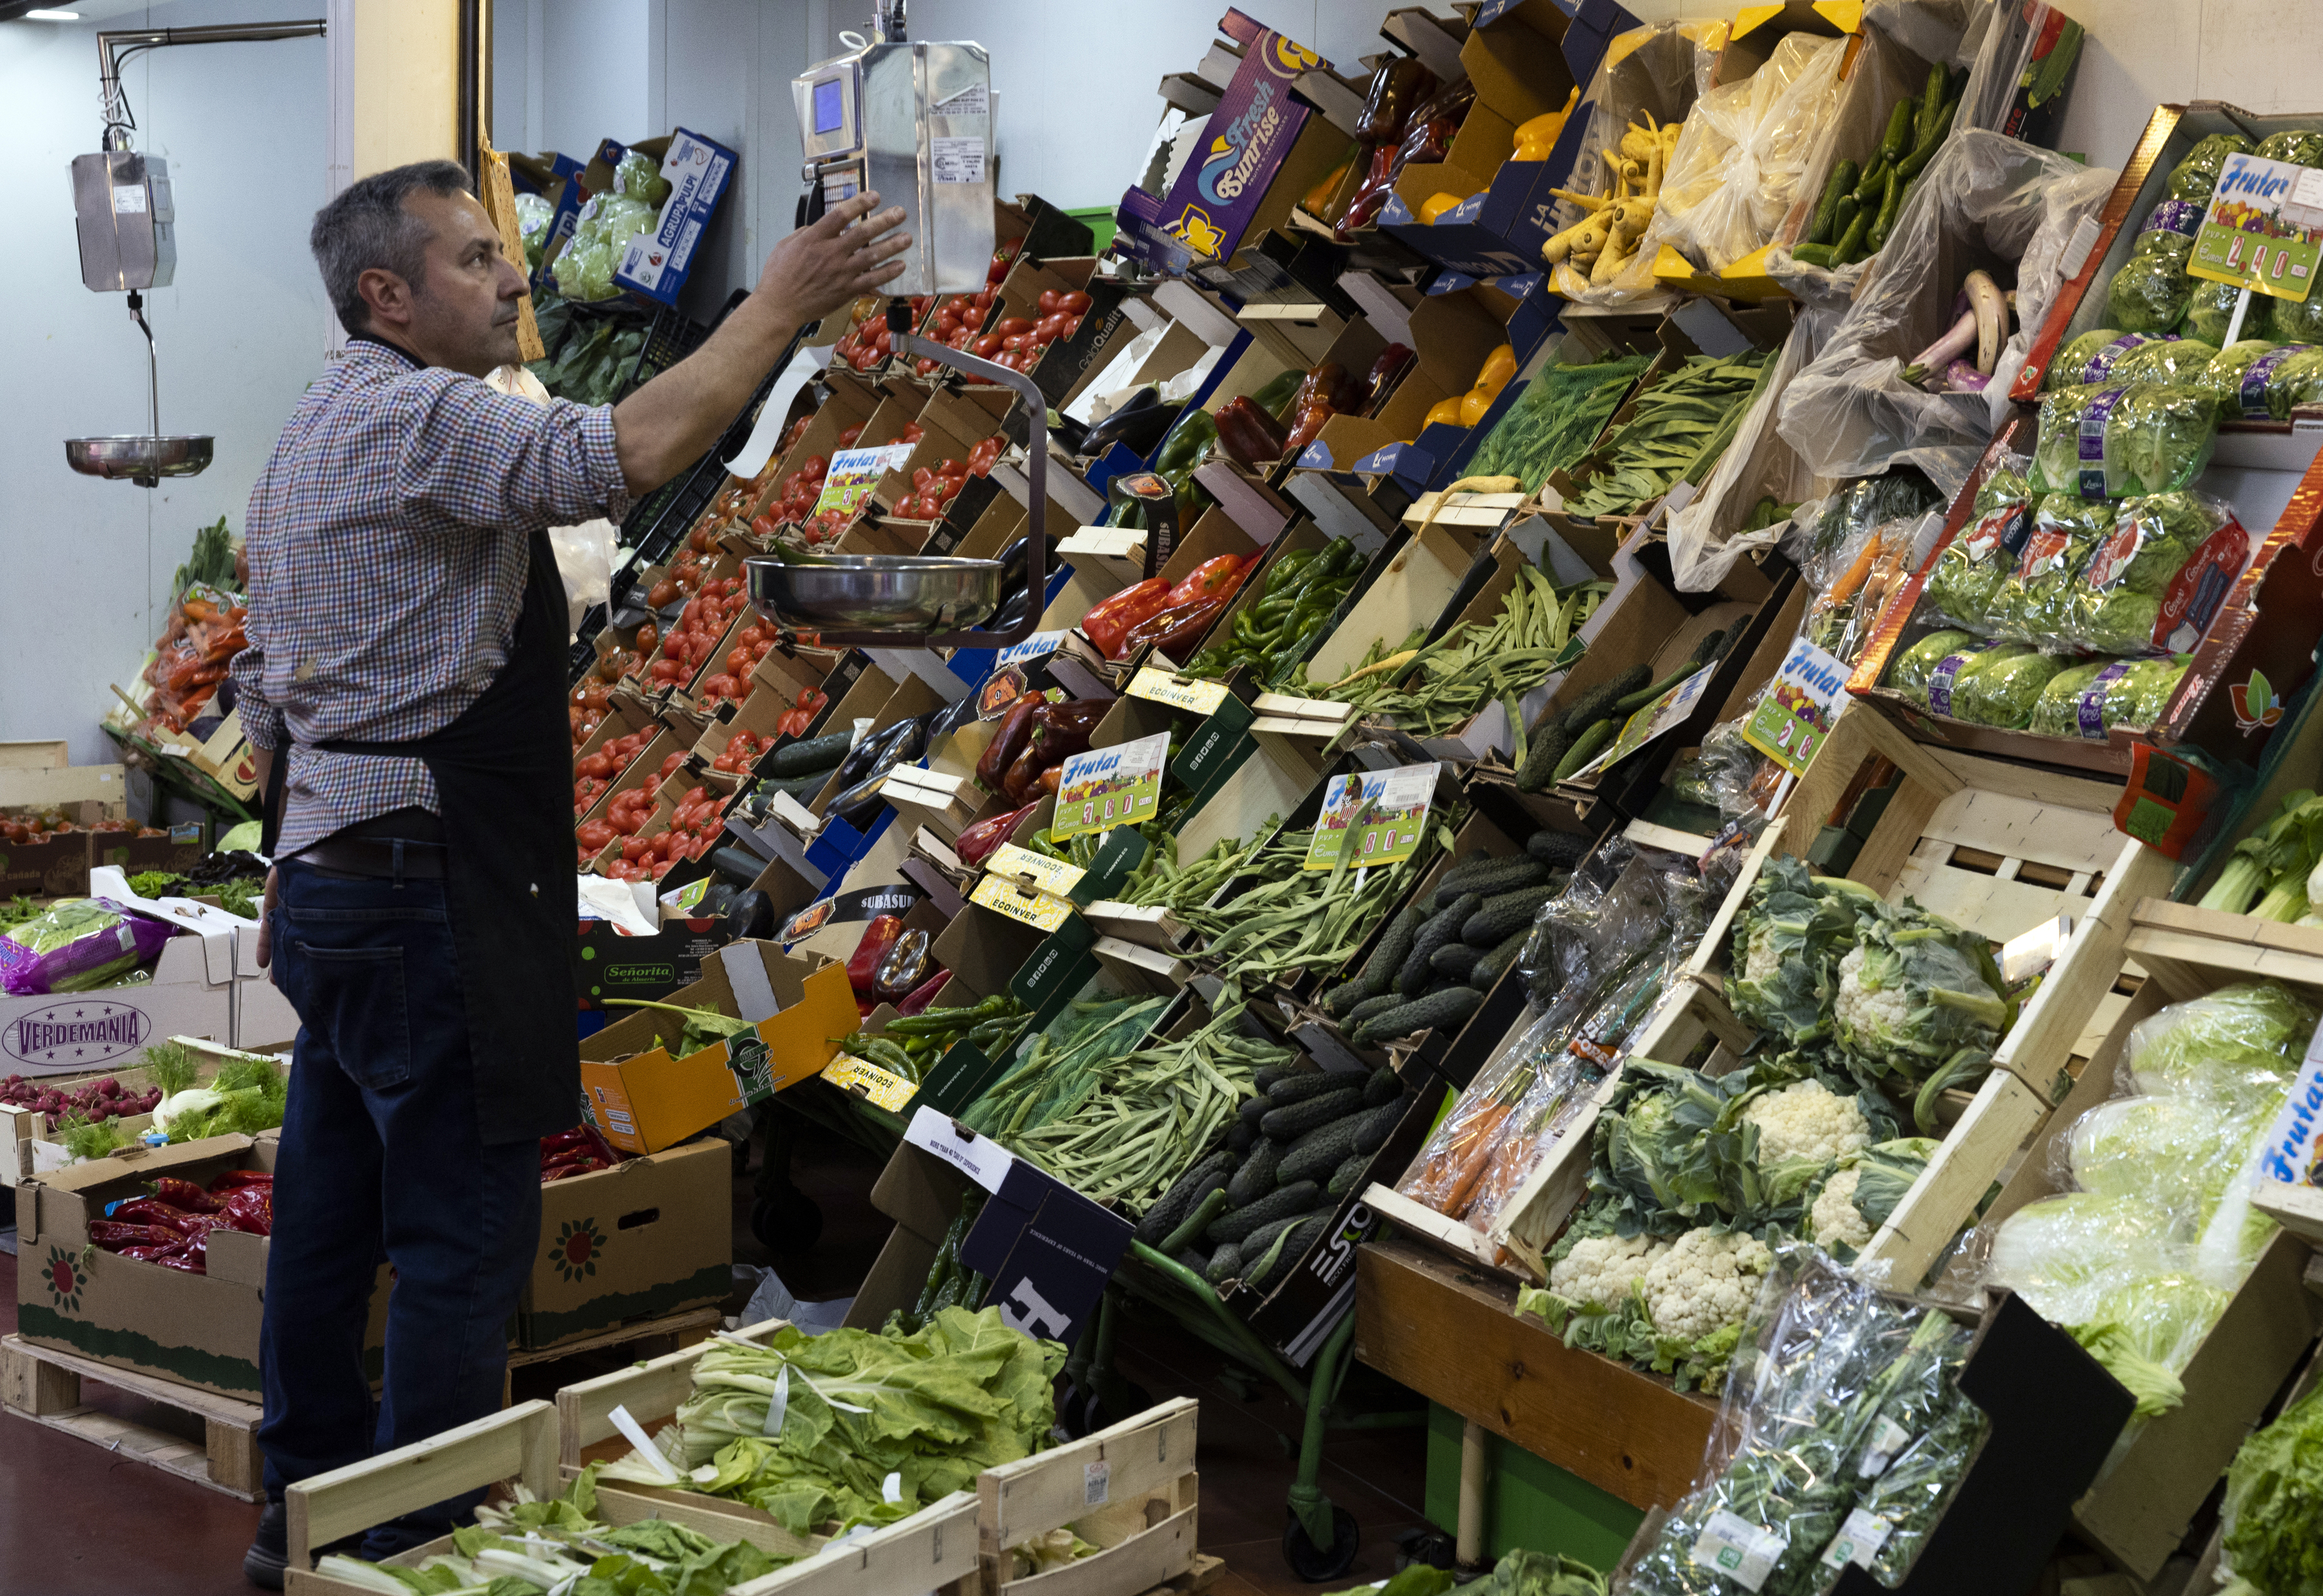 Un hombre trabaja en una parada de frutas y verduras del Mercado de la Cebada de Madrid.